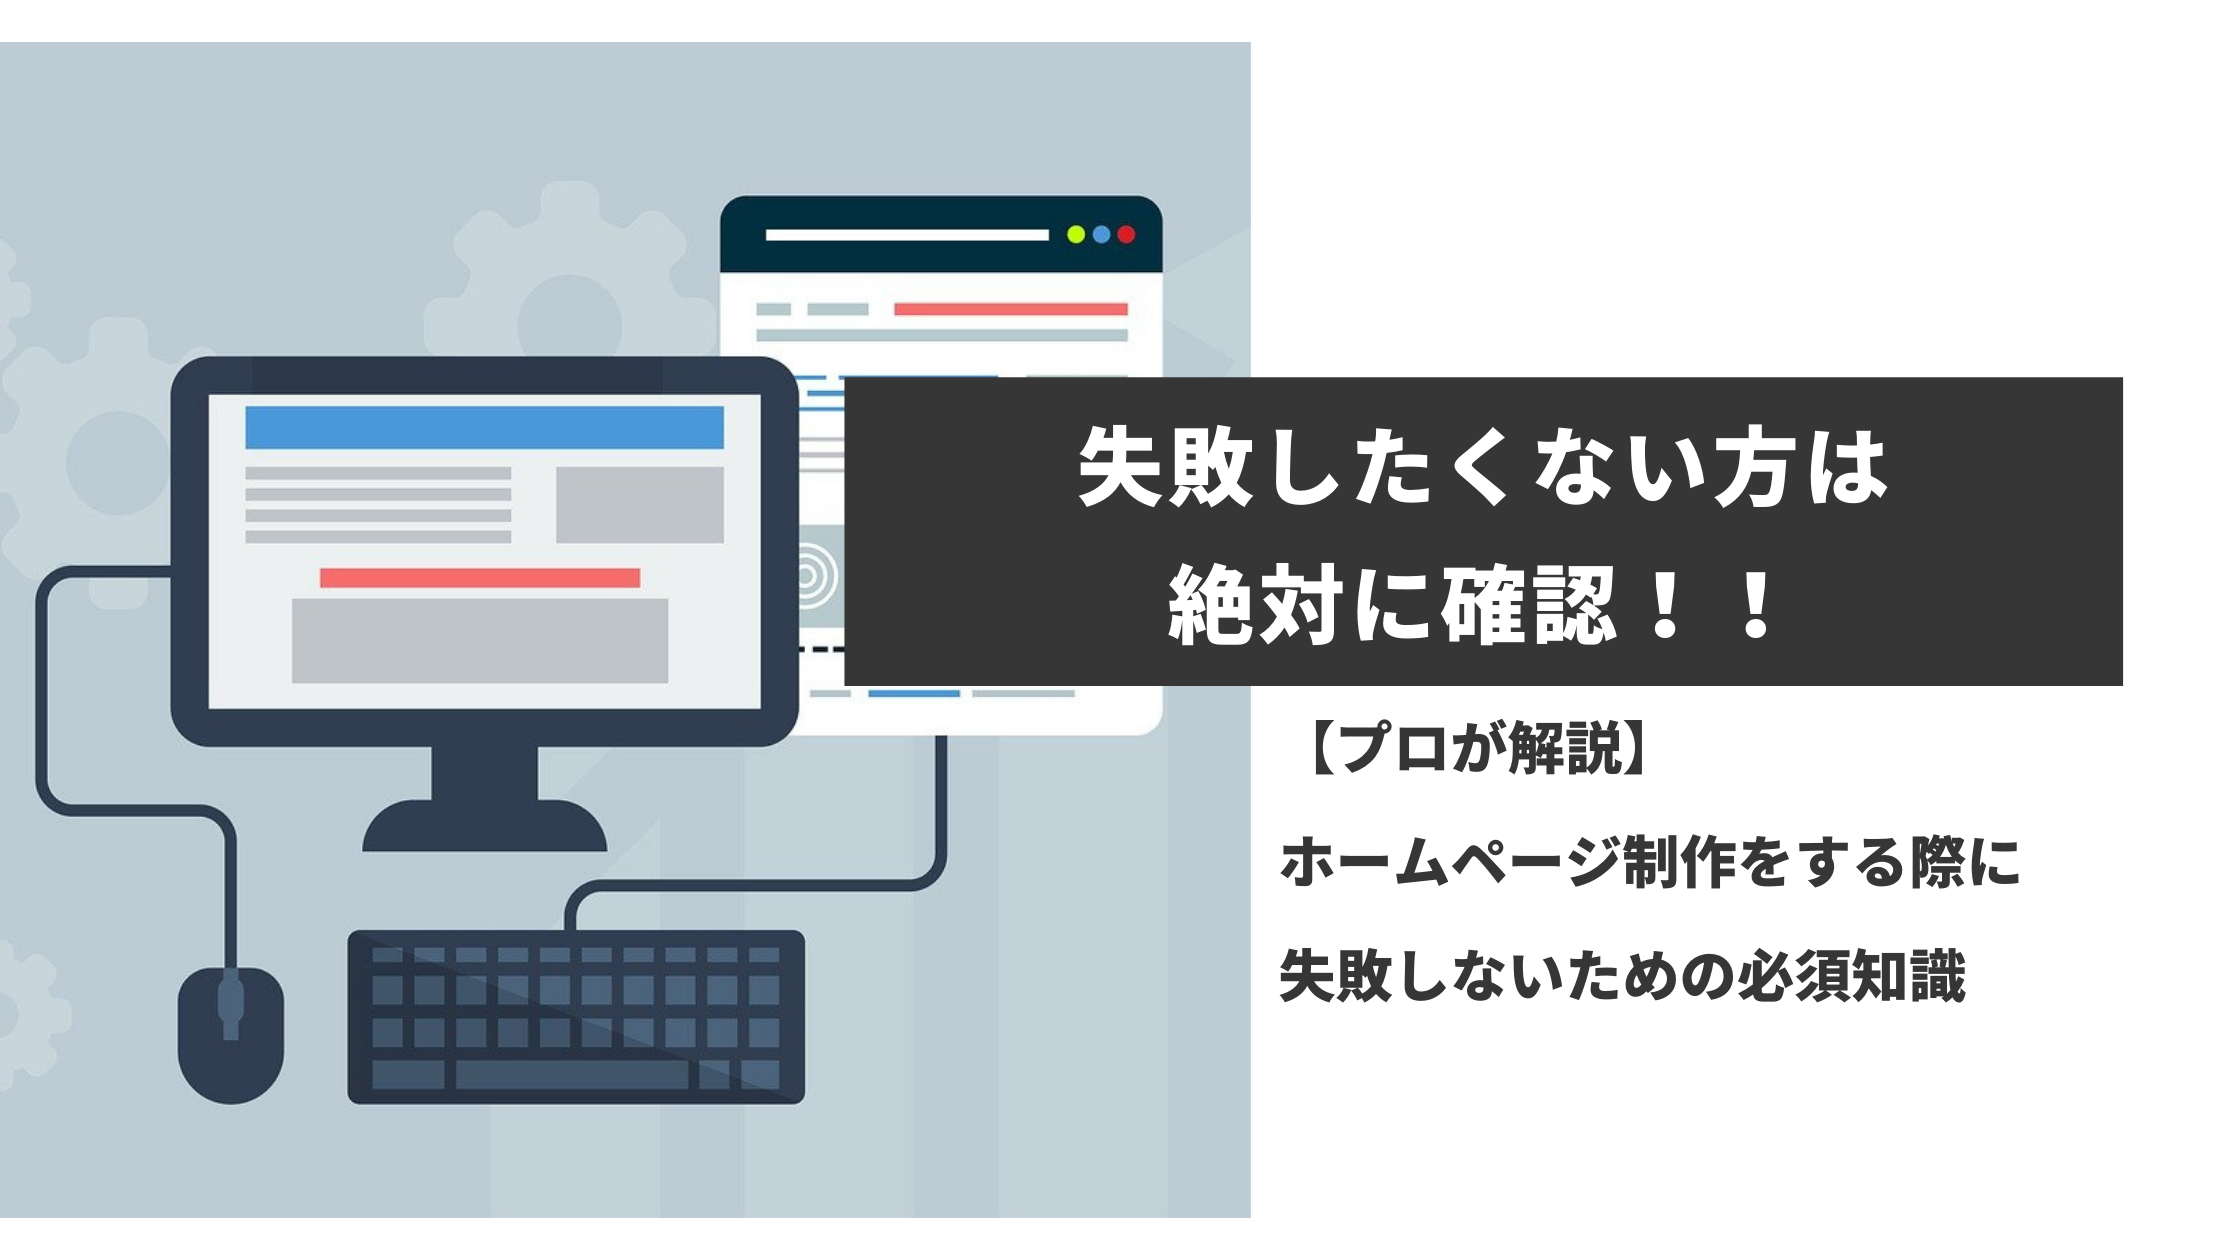 「「【最新版】福岡県でホームページ制作をする際に失敗しないための必須知識とロードマップ」を公開しました。」のサムネイル画像